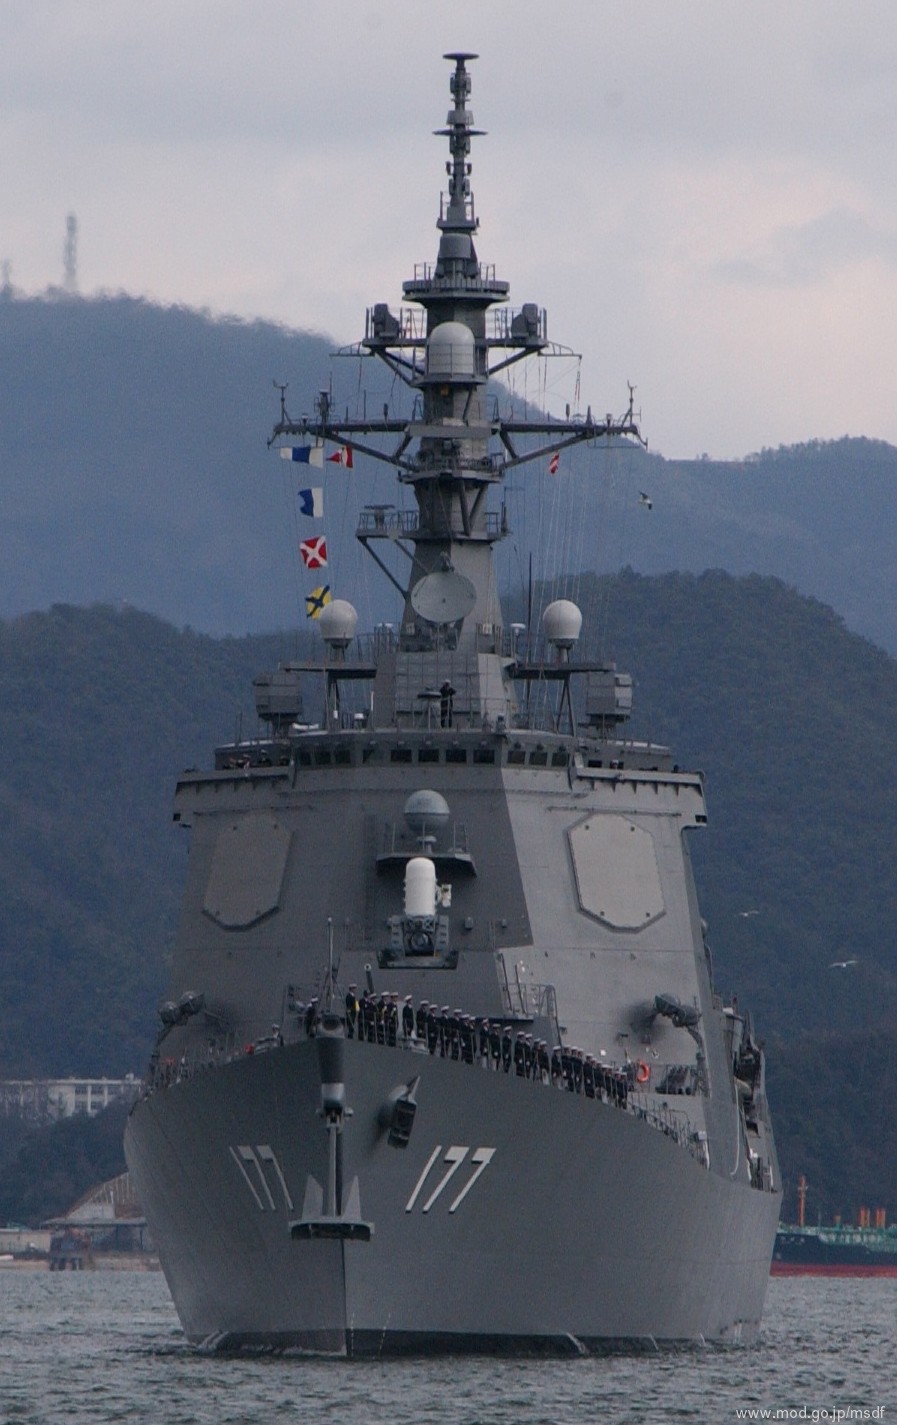 ddg-177 jds atago guided missile destroyer japan maritime self defense force jmsdf 05